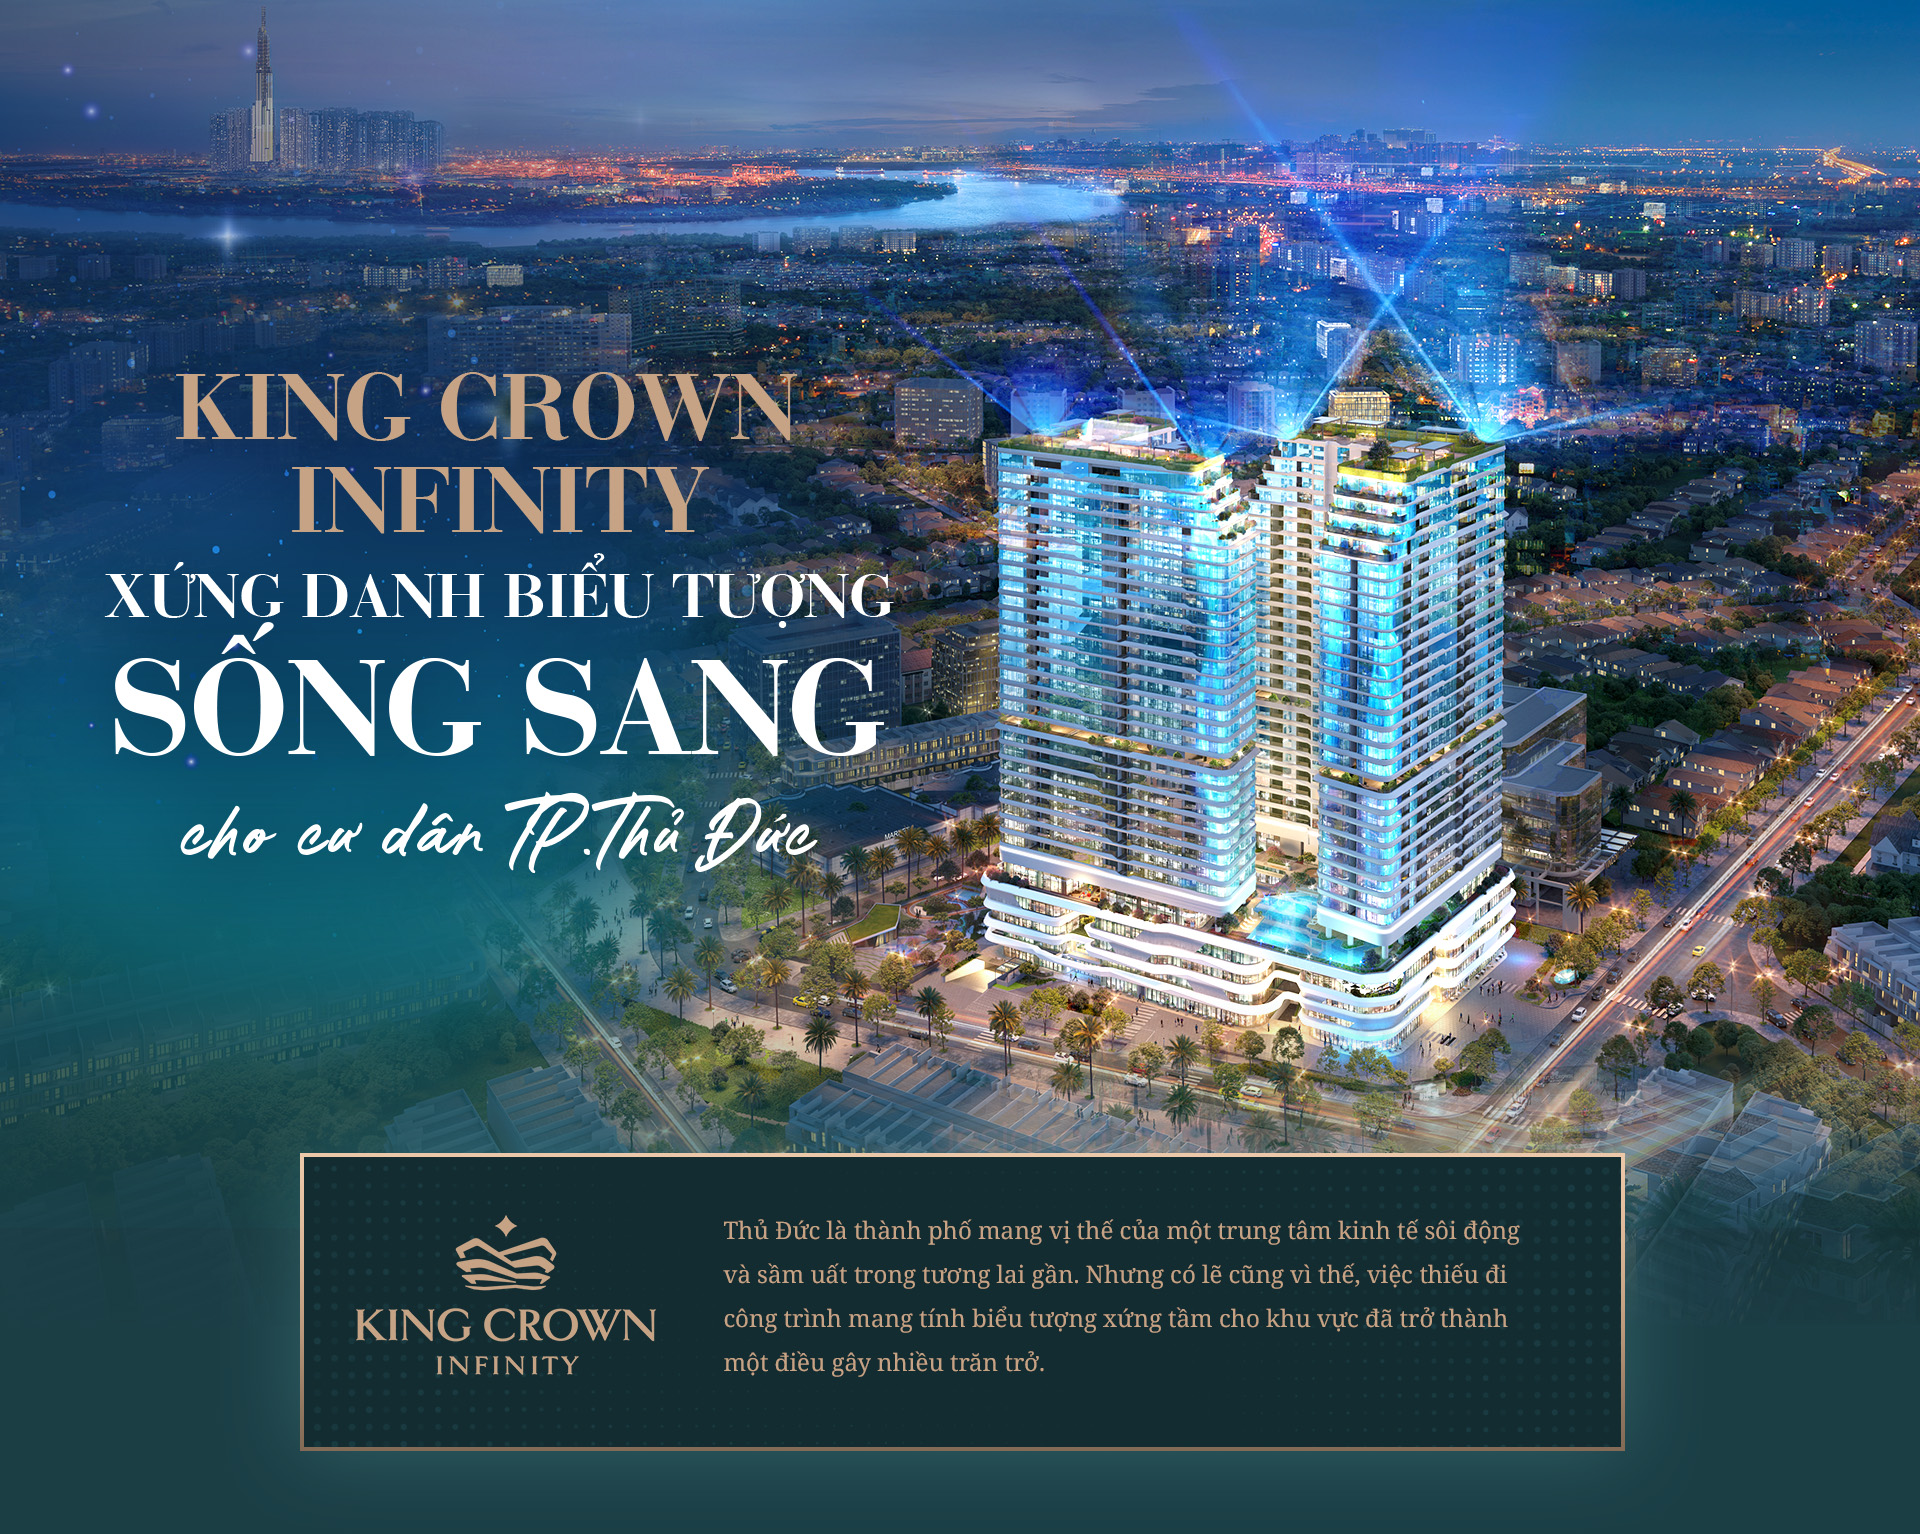 king-crown-infinity-xung-danh-bieu-tuong-song-sang-cho-cu-dan-tp-thu-duc-7765.jpg